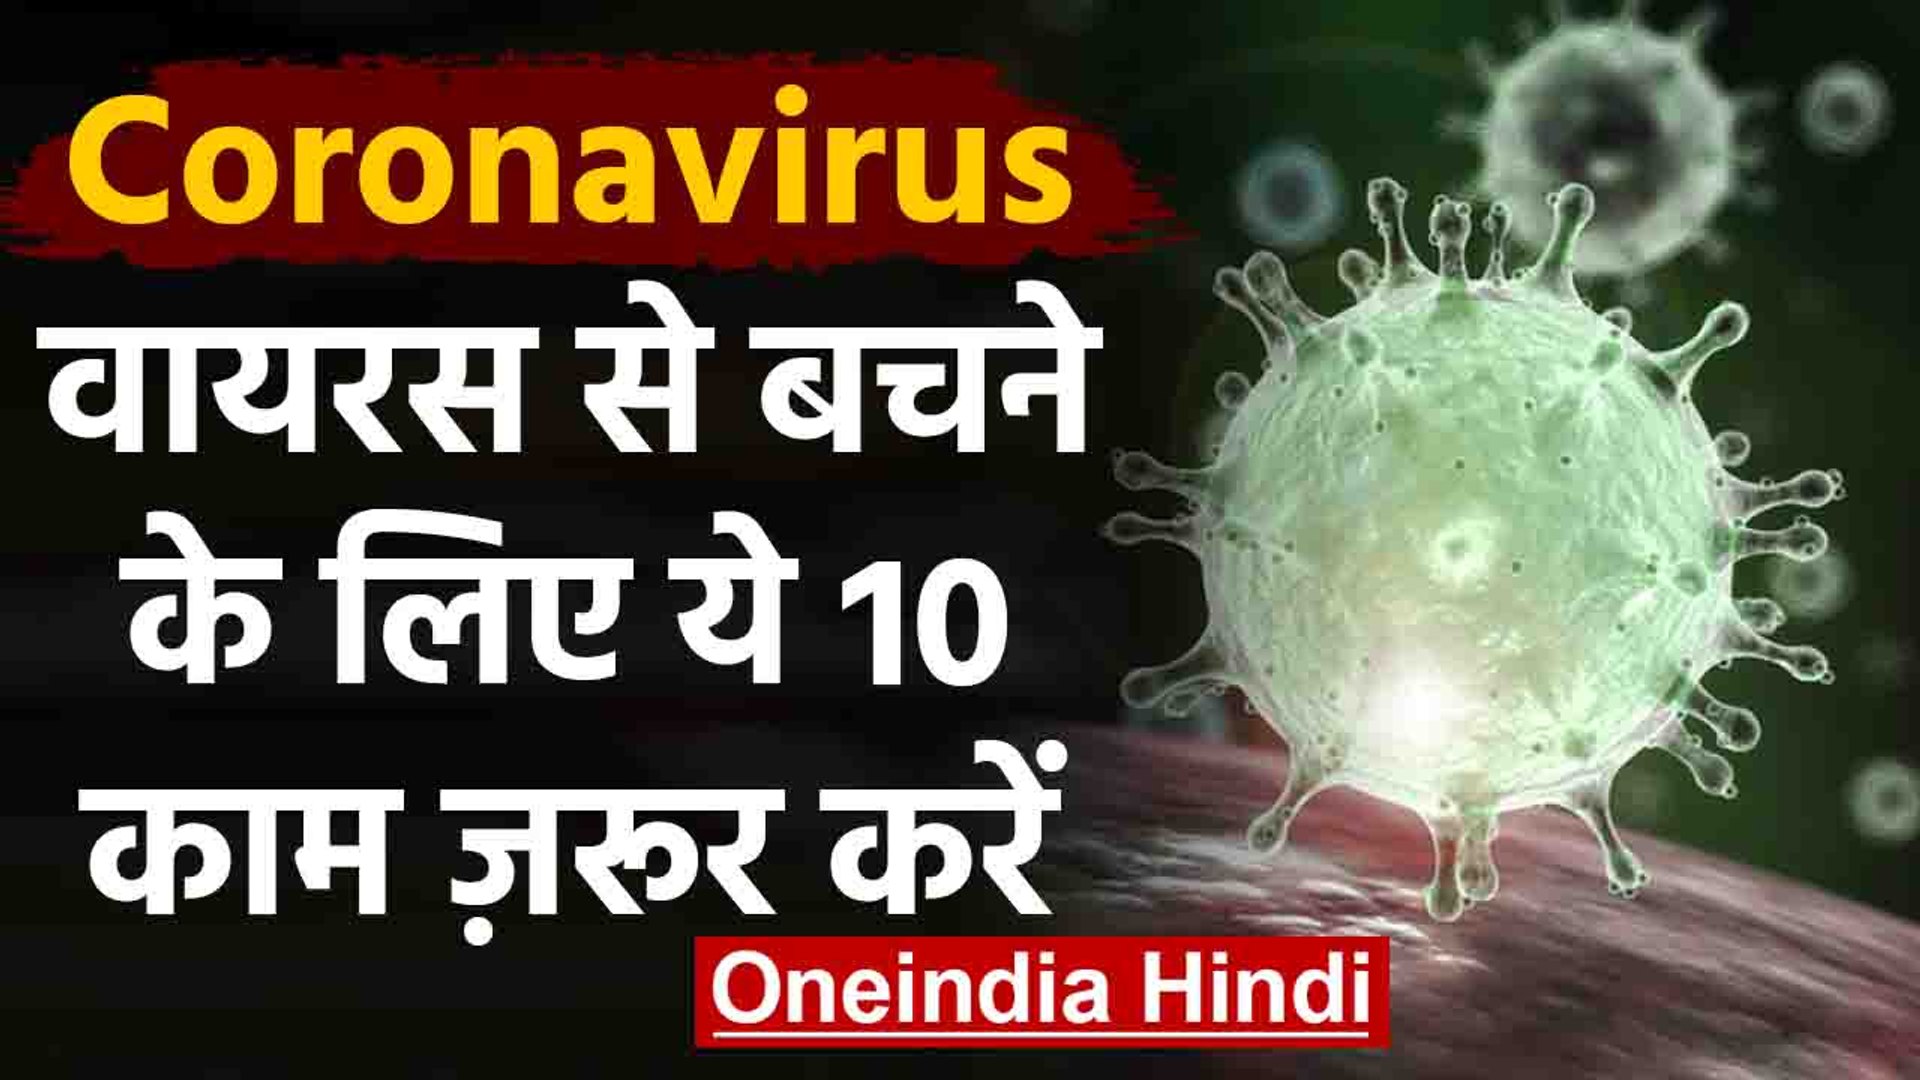 Coronavirus India: ये हैं वायरस के लक्षण?, बचाव के लिए करें ये 10 काम | Covid 19| वनइंडिया हिंदी